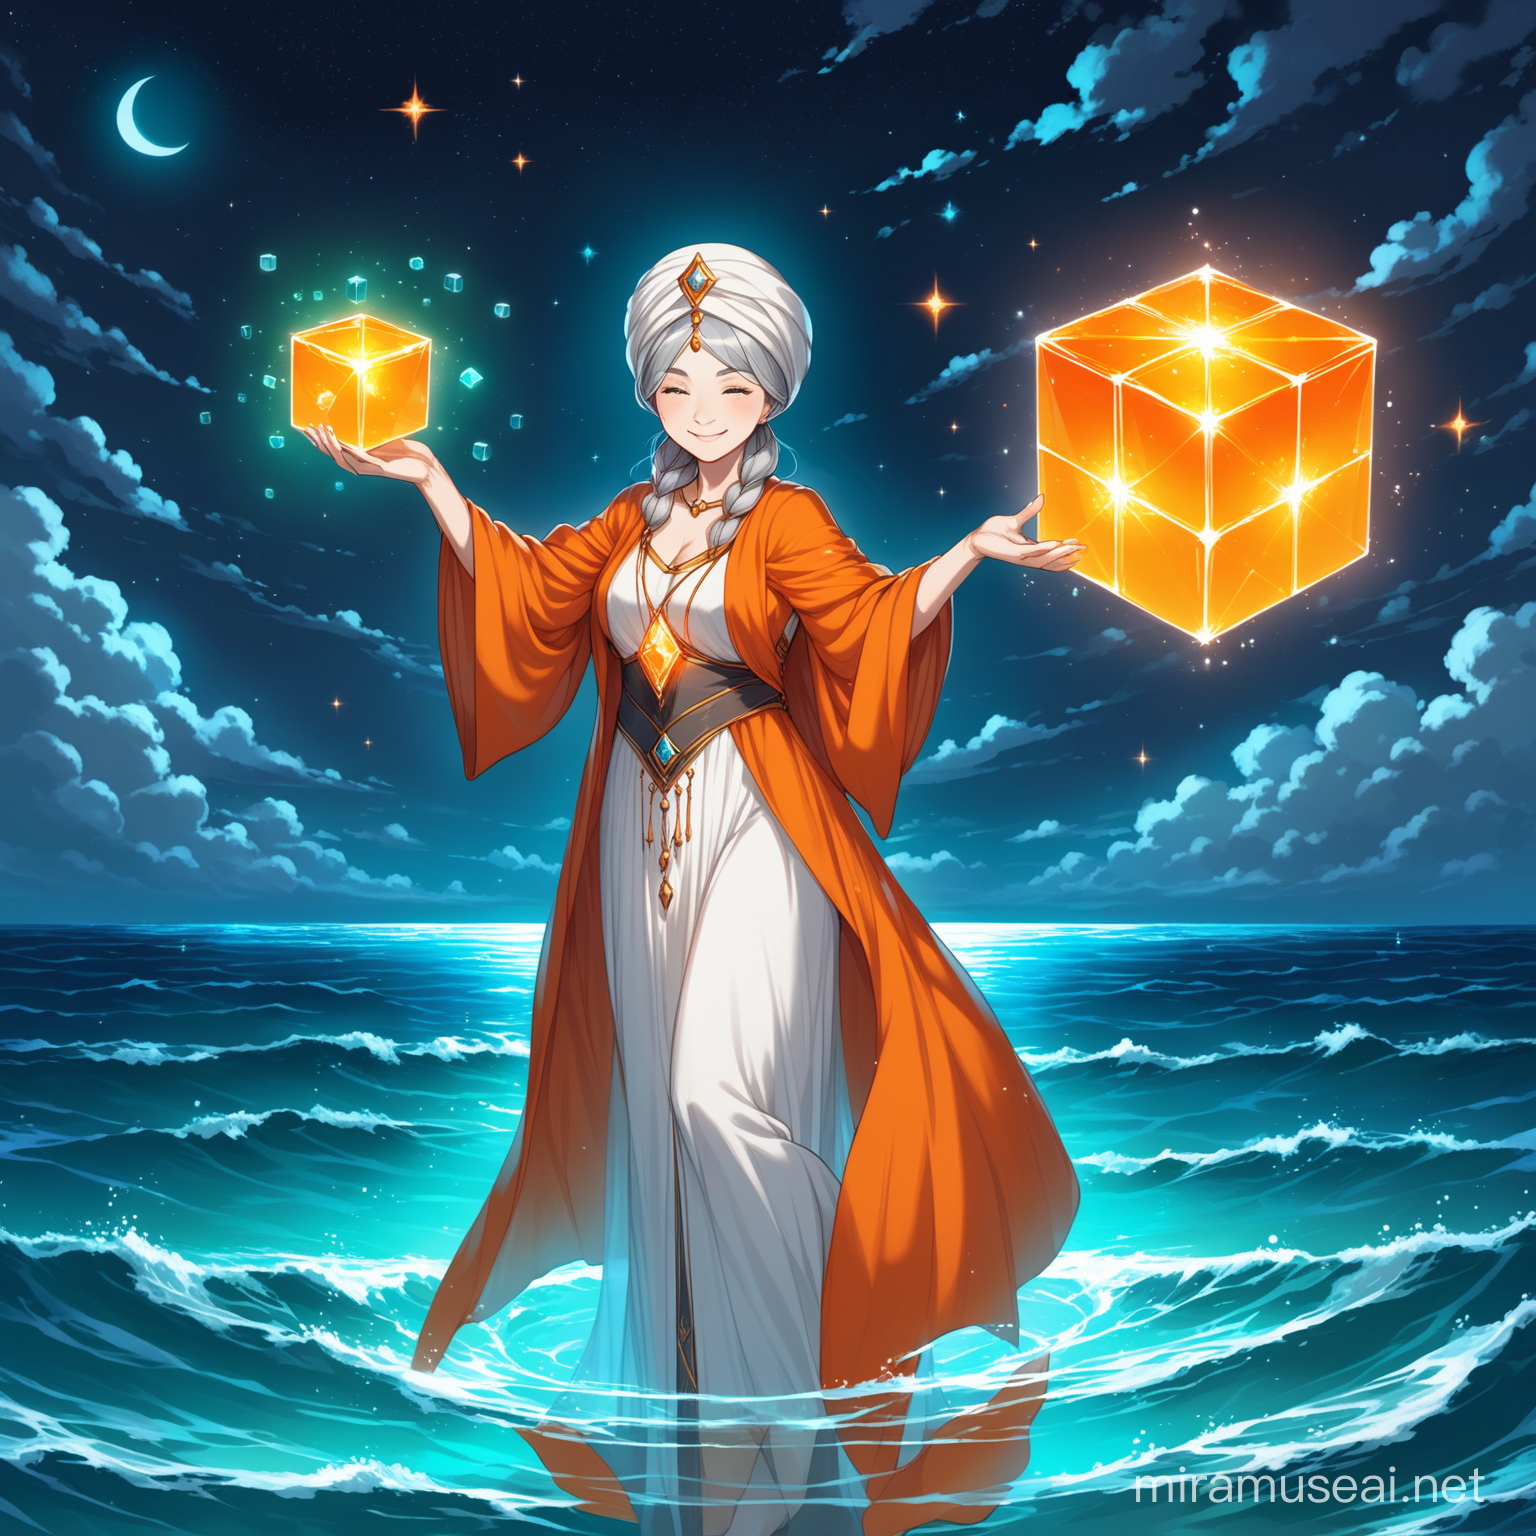 eine ältere Frau, eine magierin, trägt einen dünnen turban um den kopf, orangener Umhang, langes weißes kleid, zusammengeflochtene kurze graue Haare, lächelt selbstgefällig, schwebt auf einer transparenten platte, vor dem Meer, nacht, hält einen magischen orangenen interdimensionalen würfel in der hand 